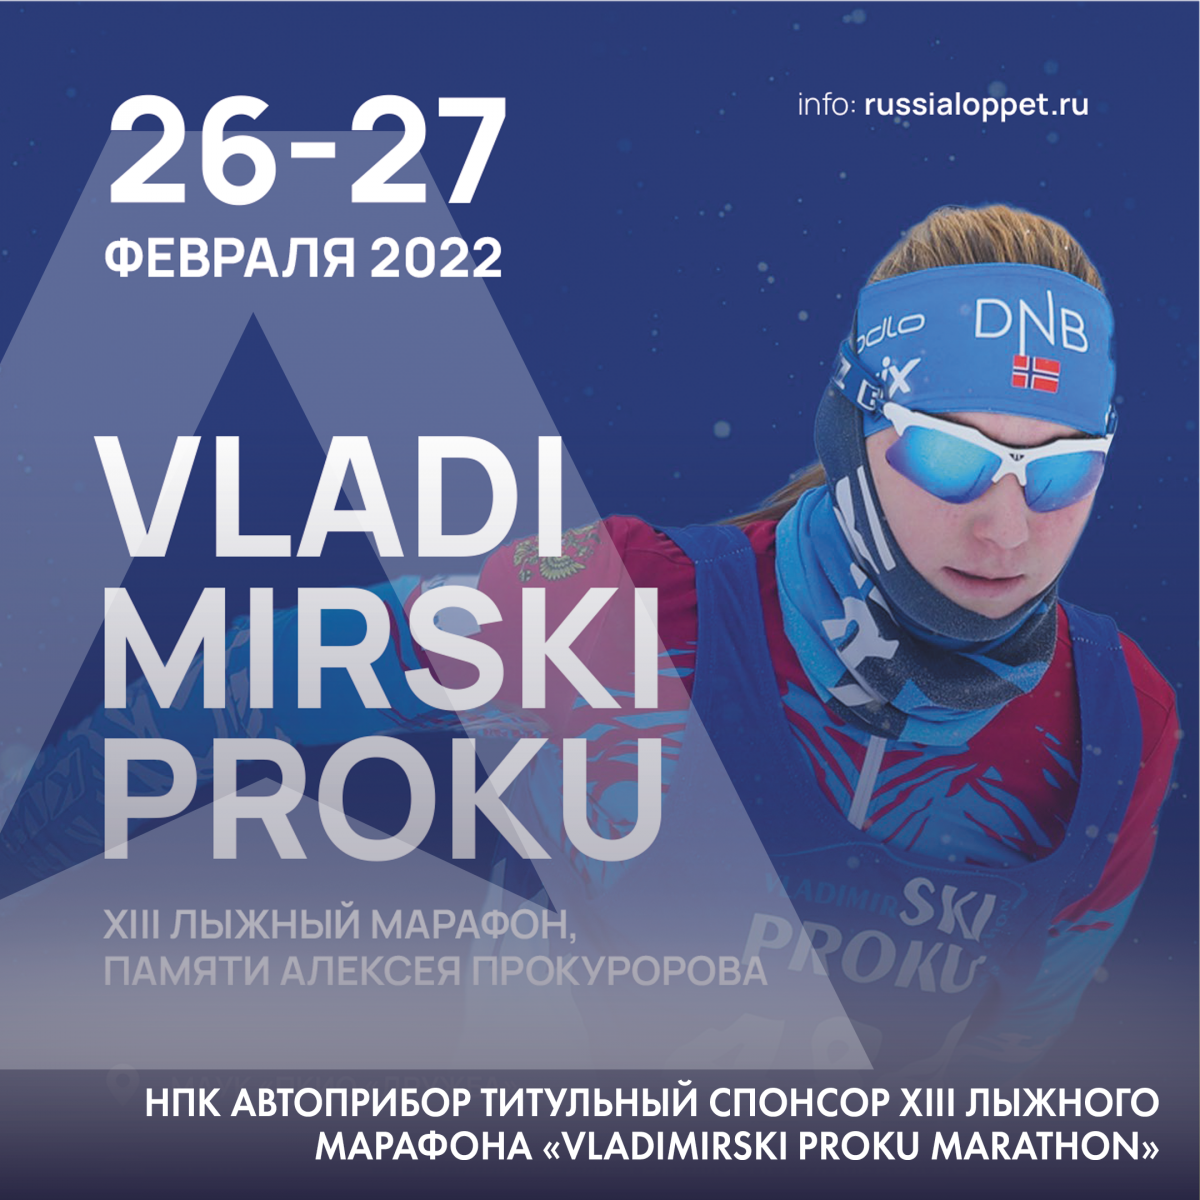 XIII лыжный марафон VladimirSKI Proku marathon пройдет при поддержке НПК АВТОПРИБОР